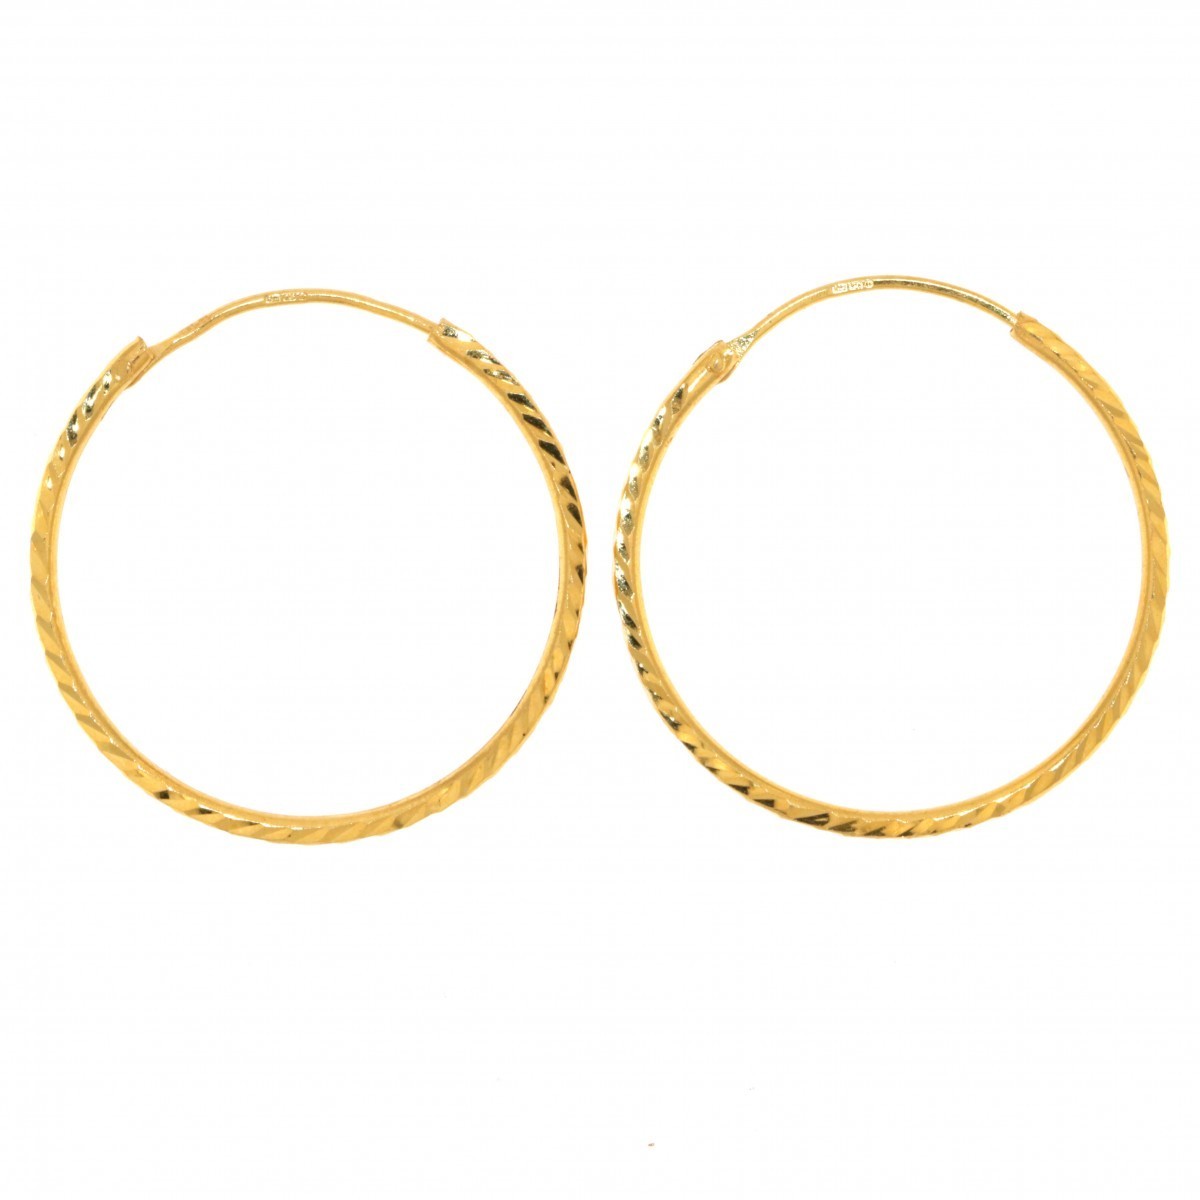 22ct Gold Medium Plain Hoop Earrings